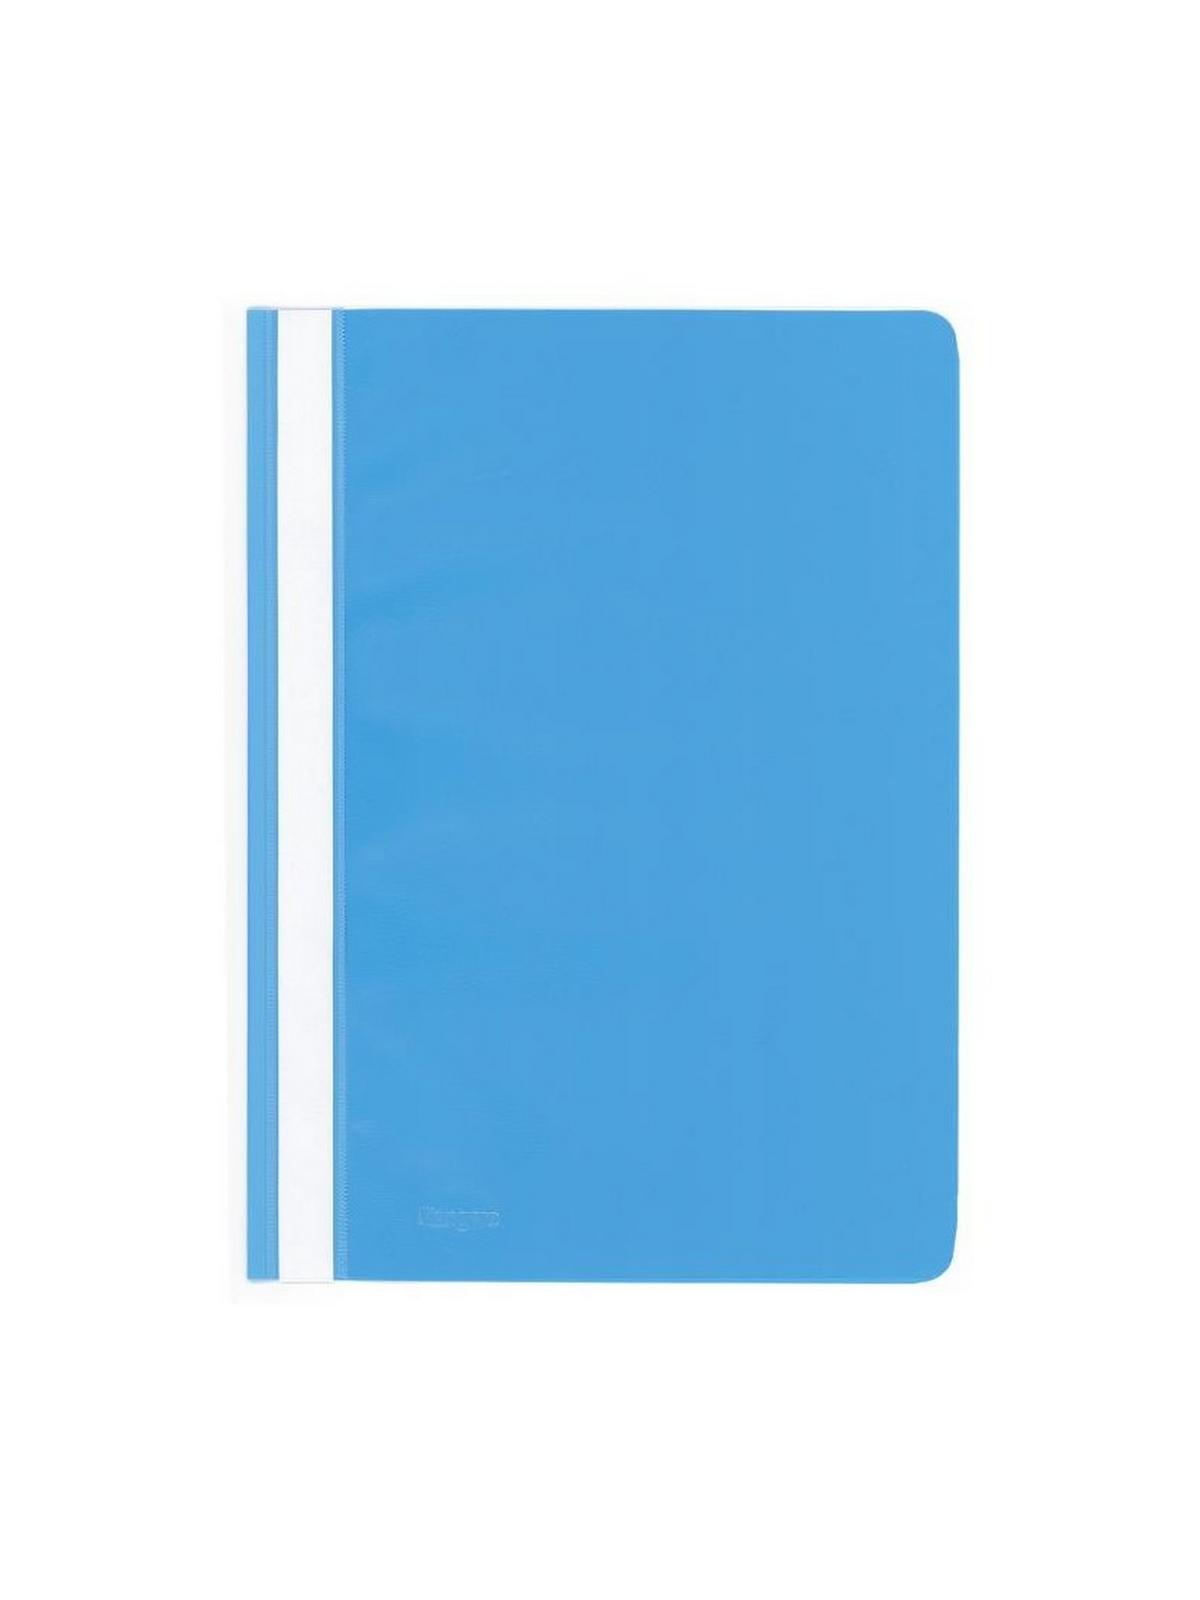 Ντοσιέ πλαστικο με έλασμα pp (Flat Files) γαλάζιο